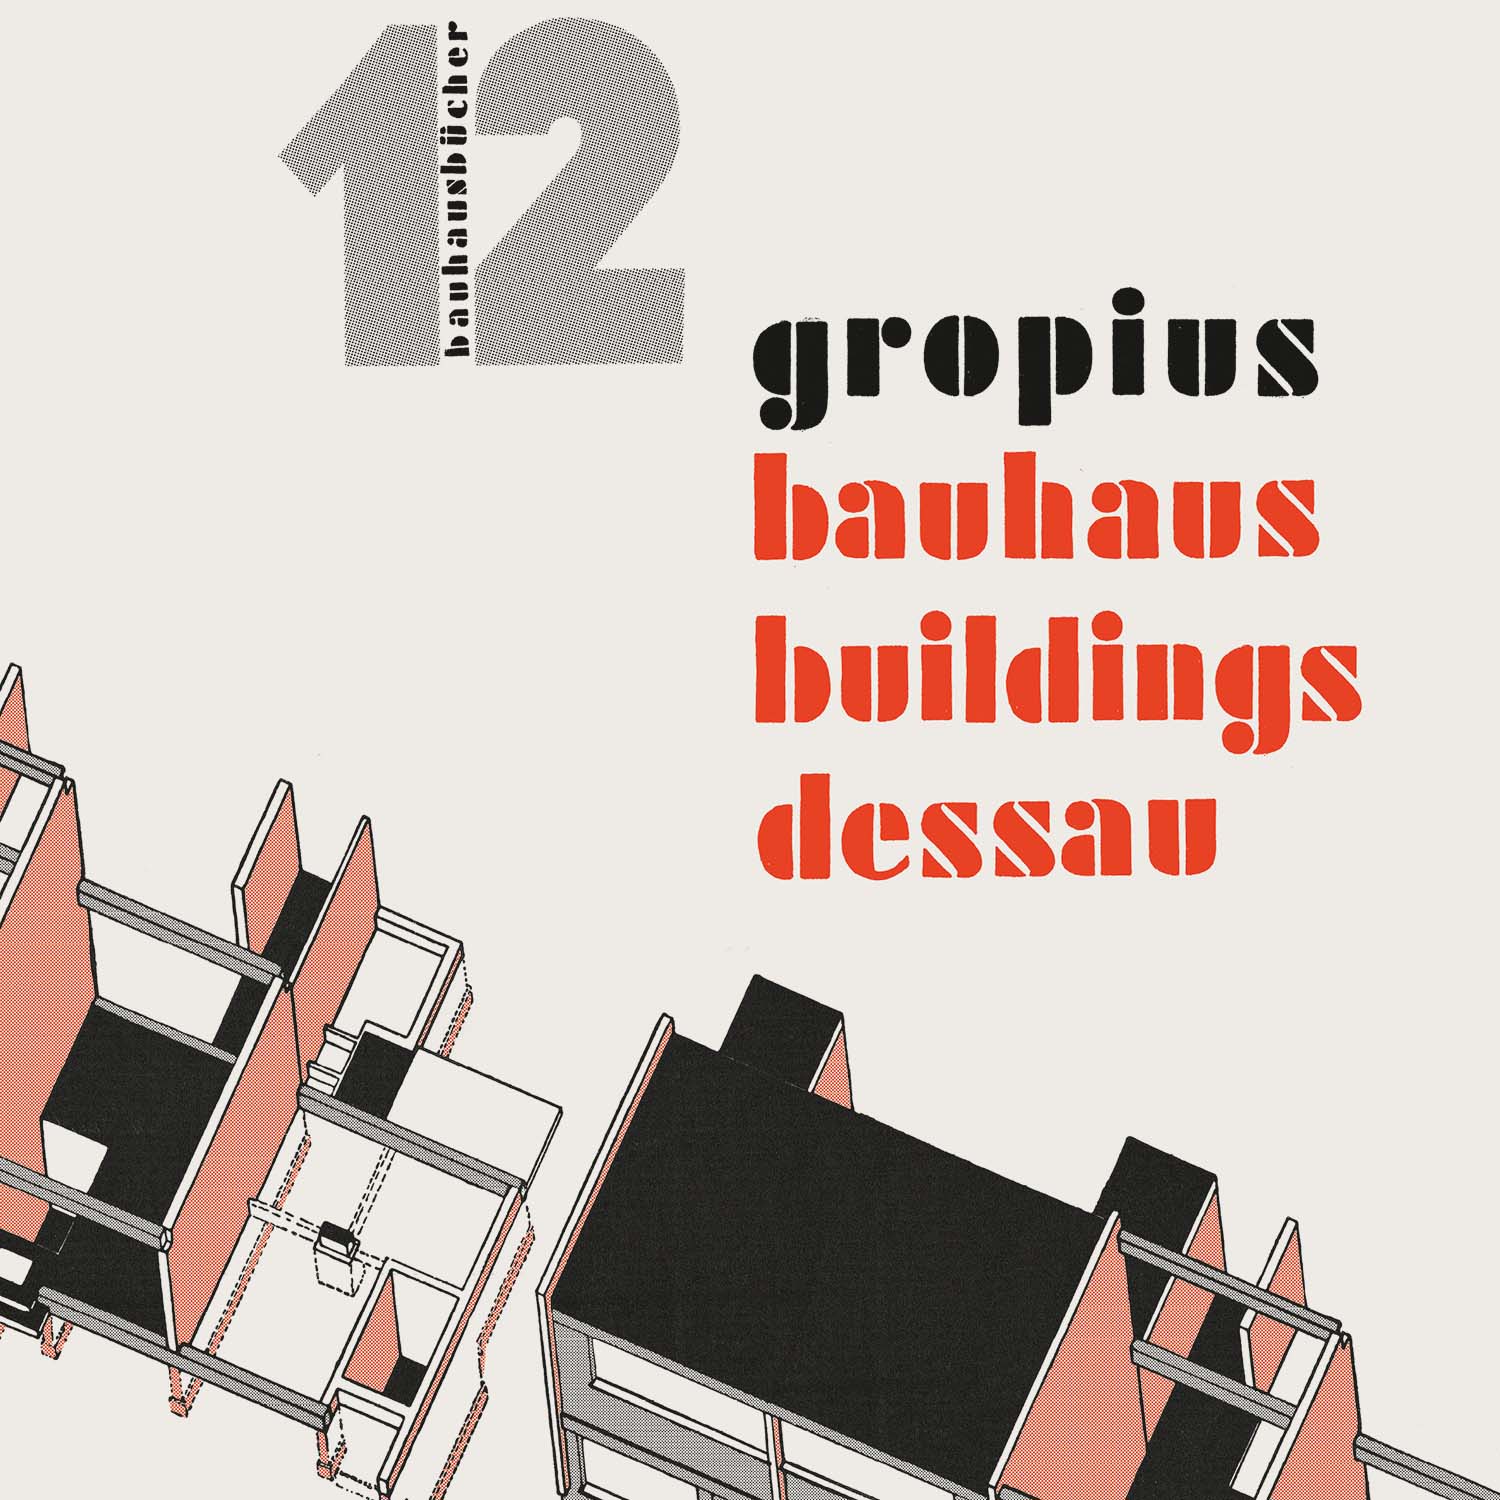 Bild von Bauhaus-Gebäude Dessau